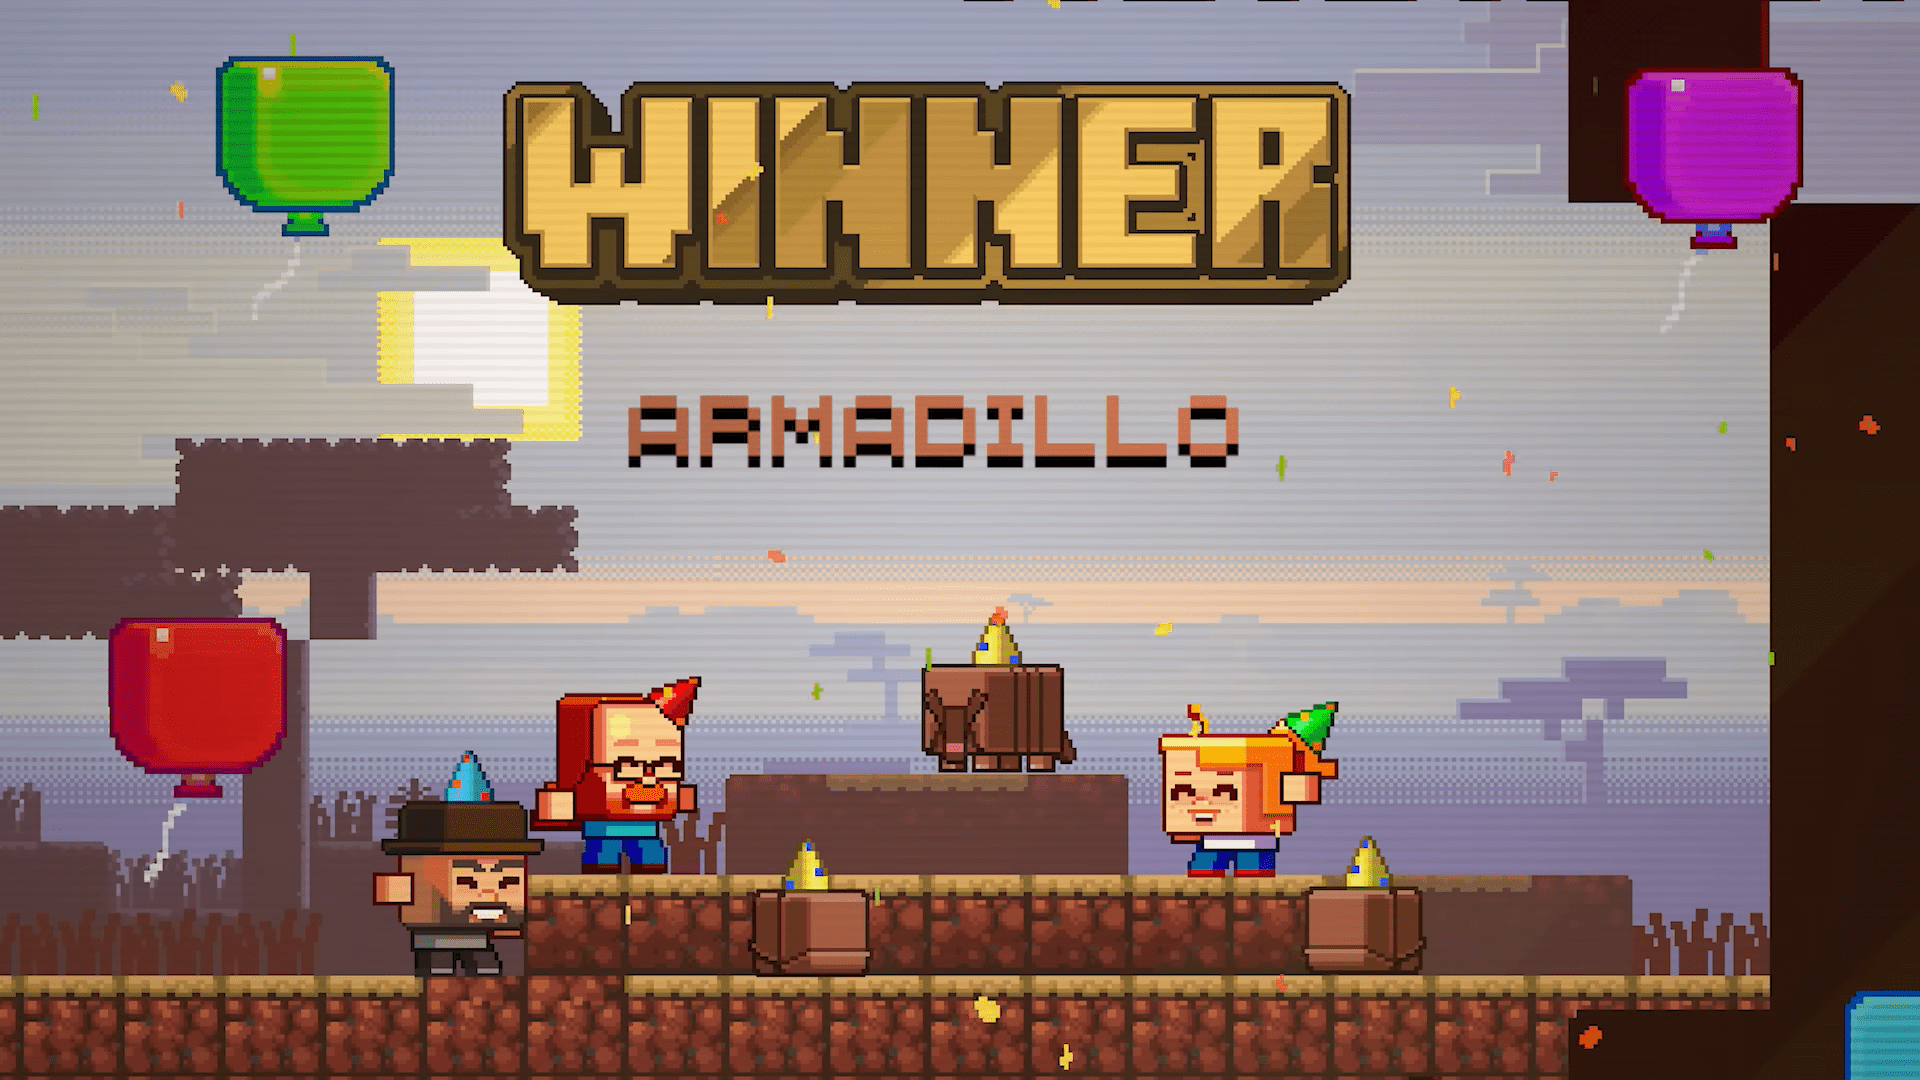 Minecraft Live 2023: Vote for the armadillo! 